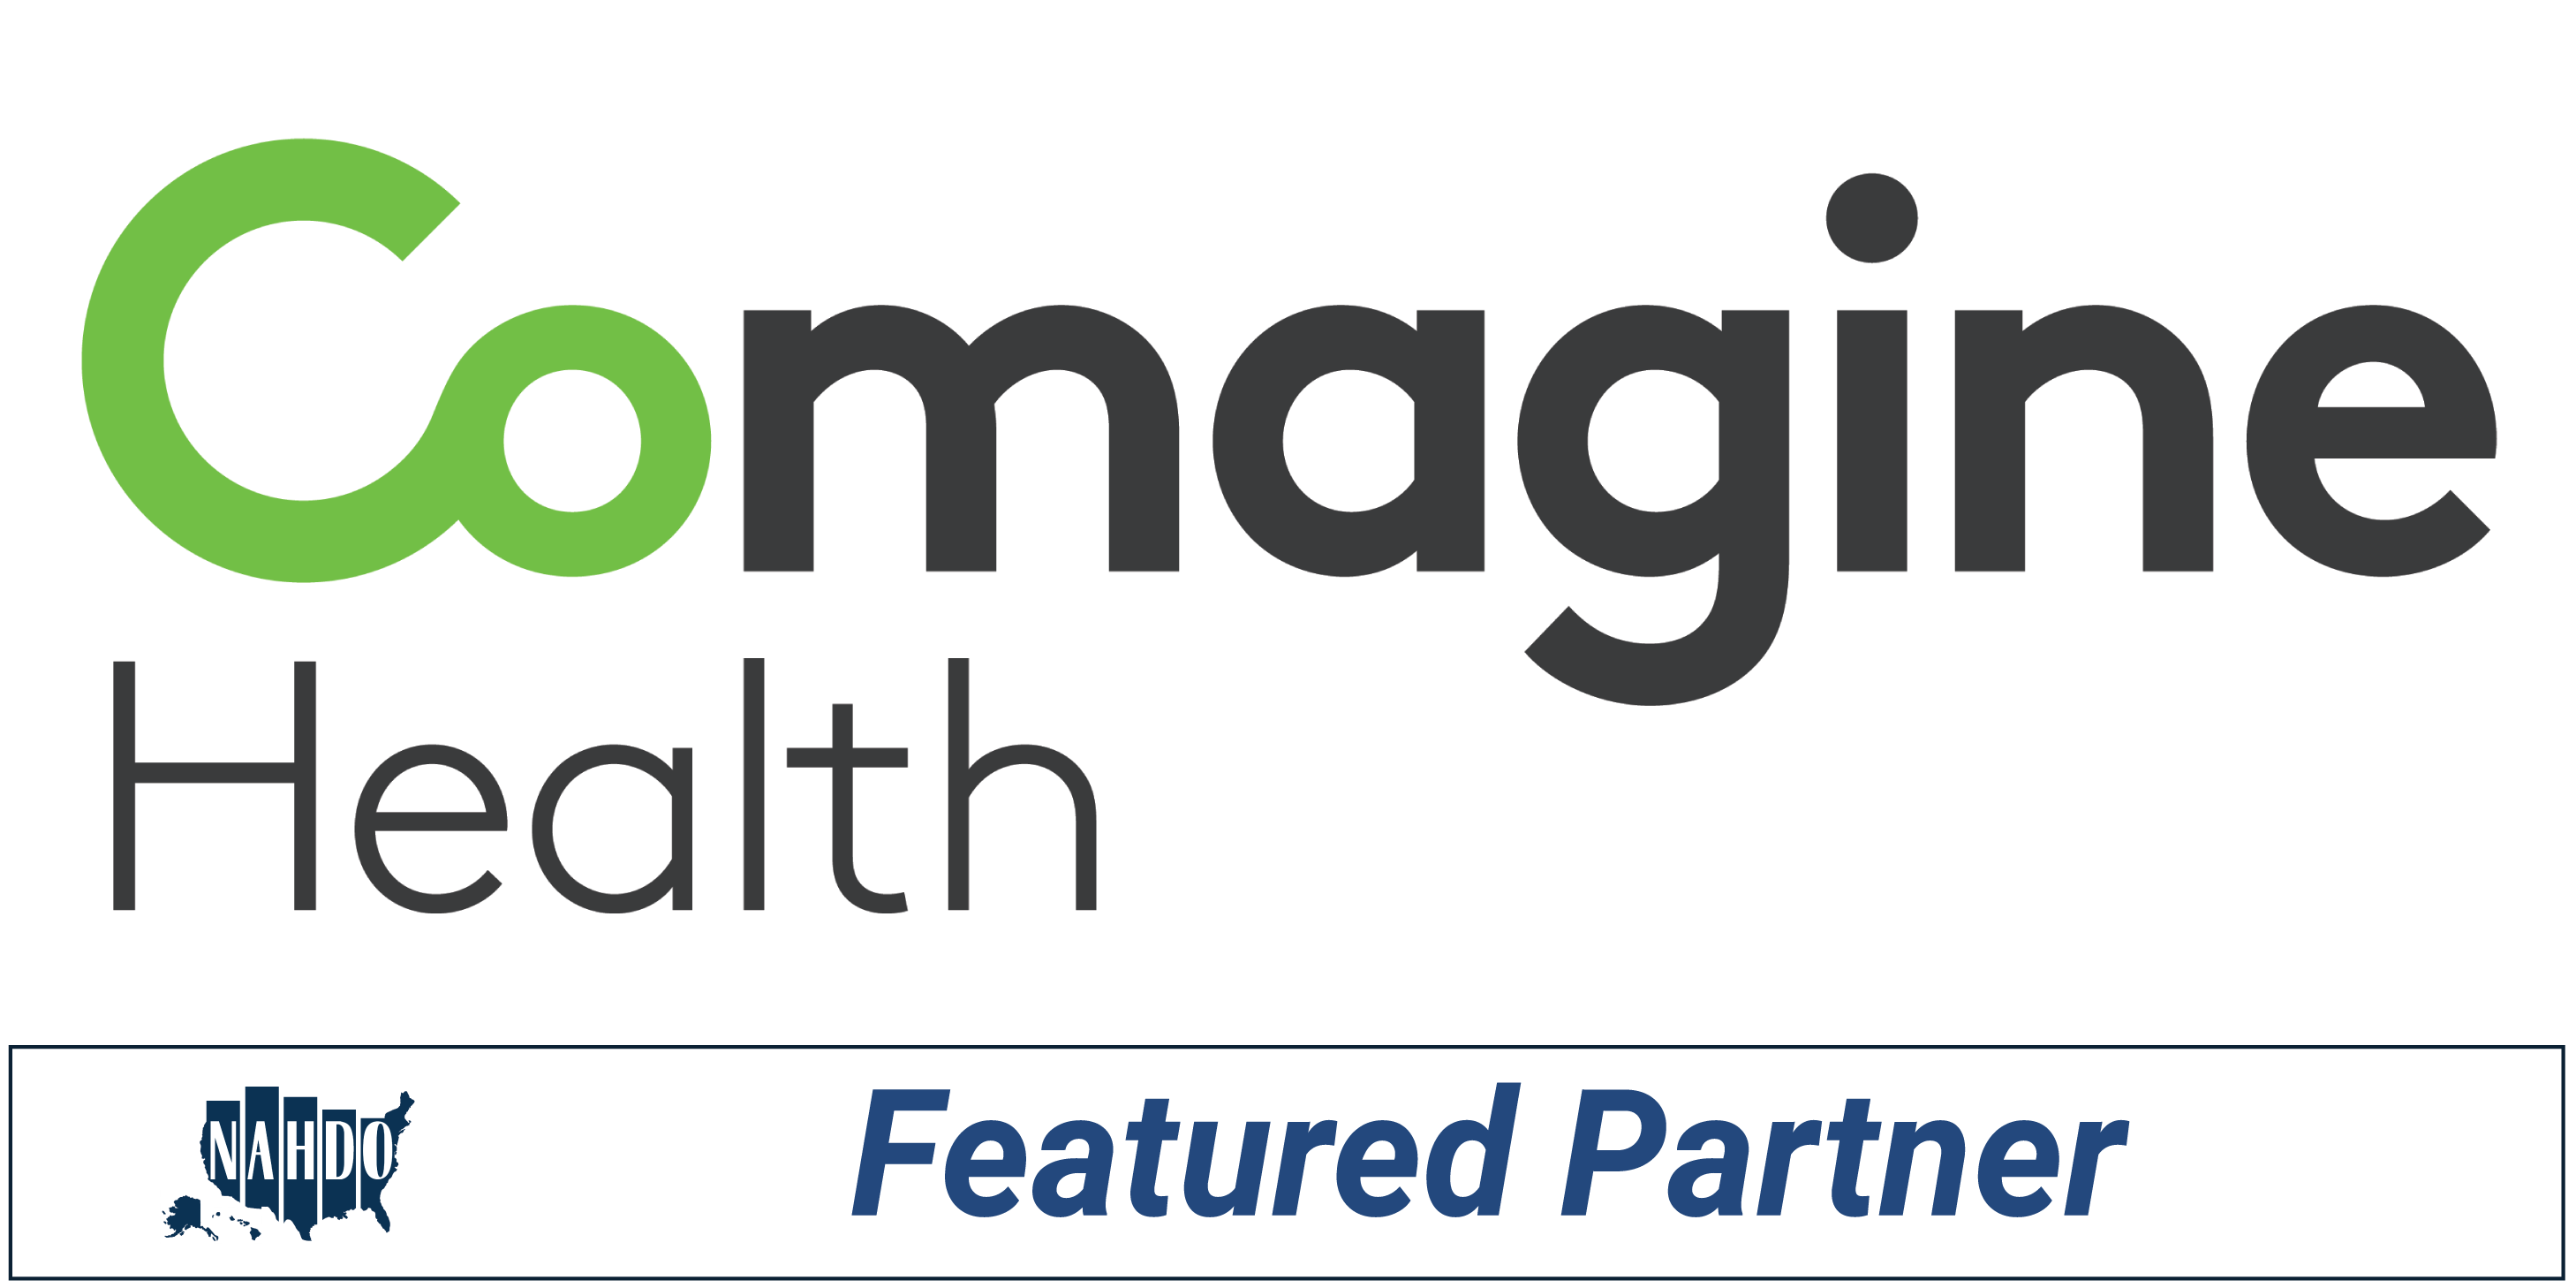 Comagine Featured Partner Logo